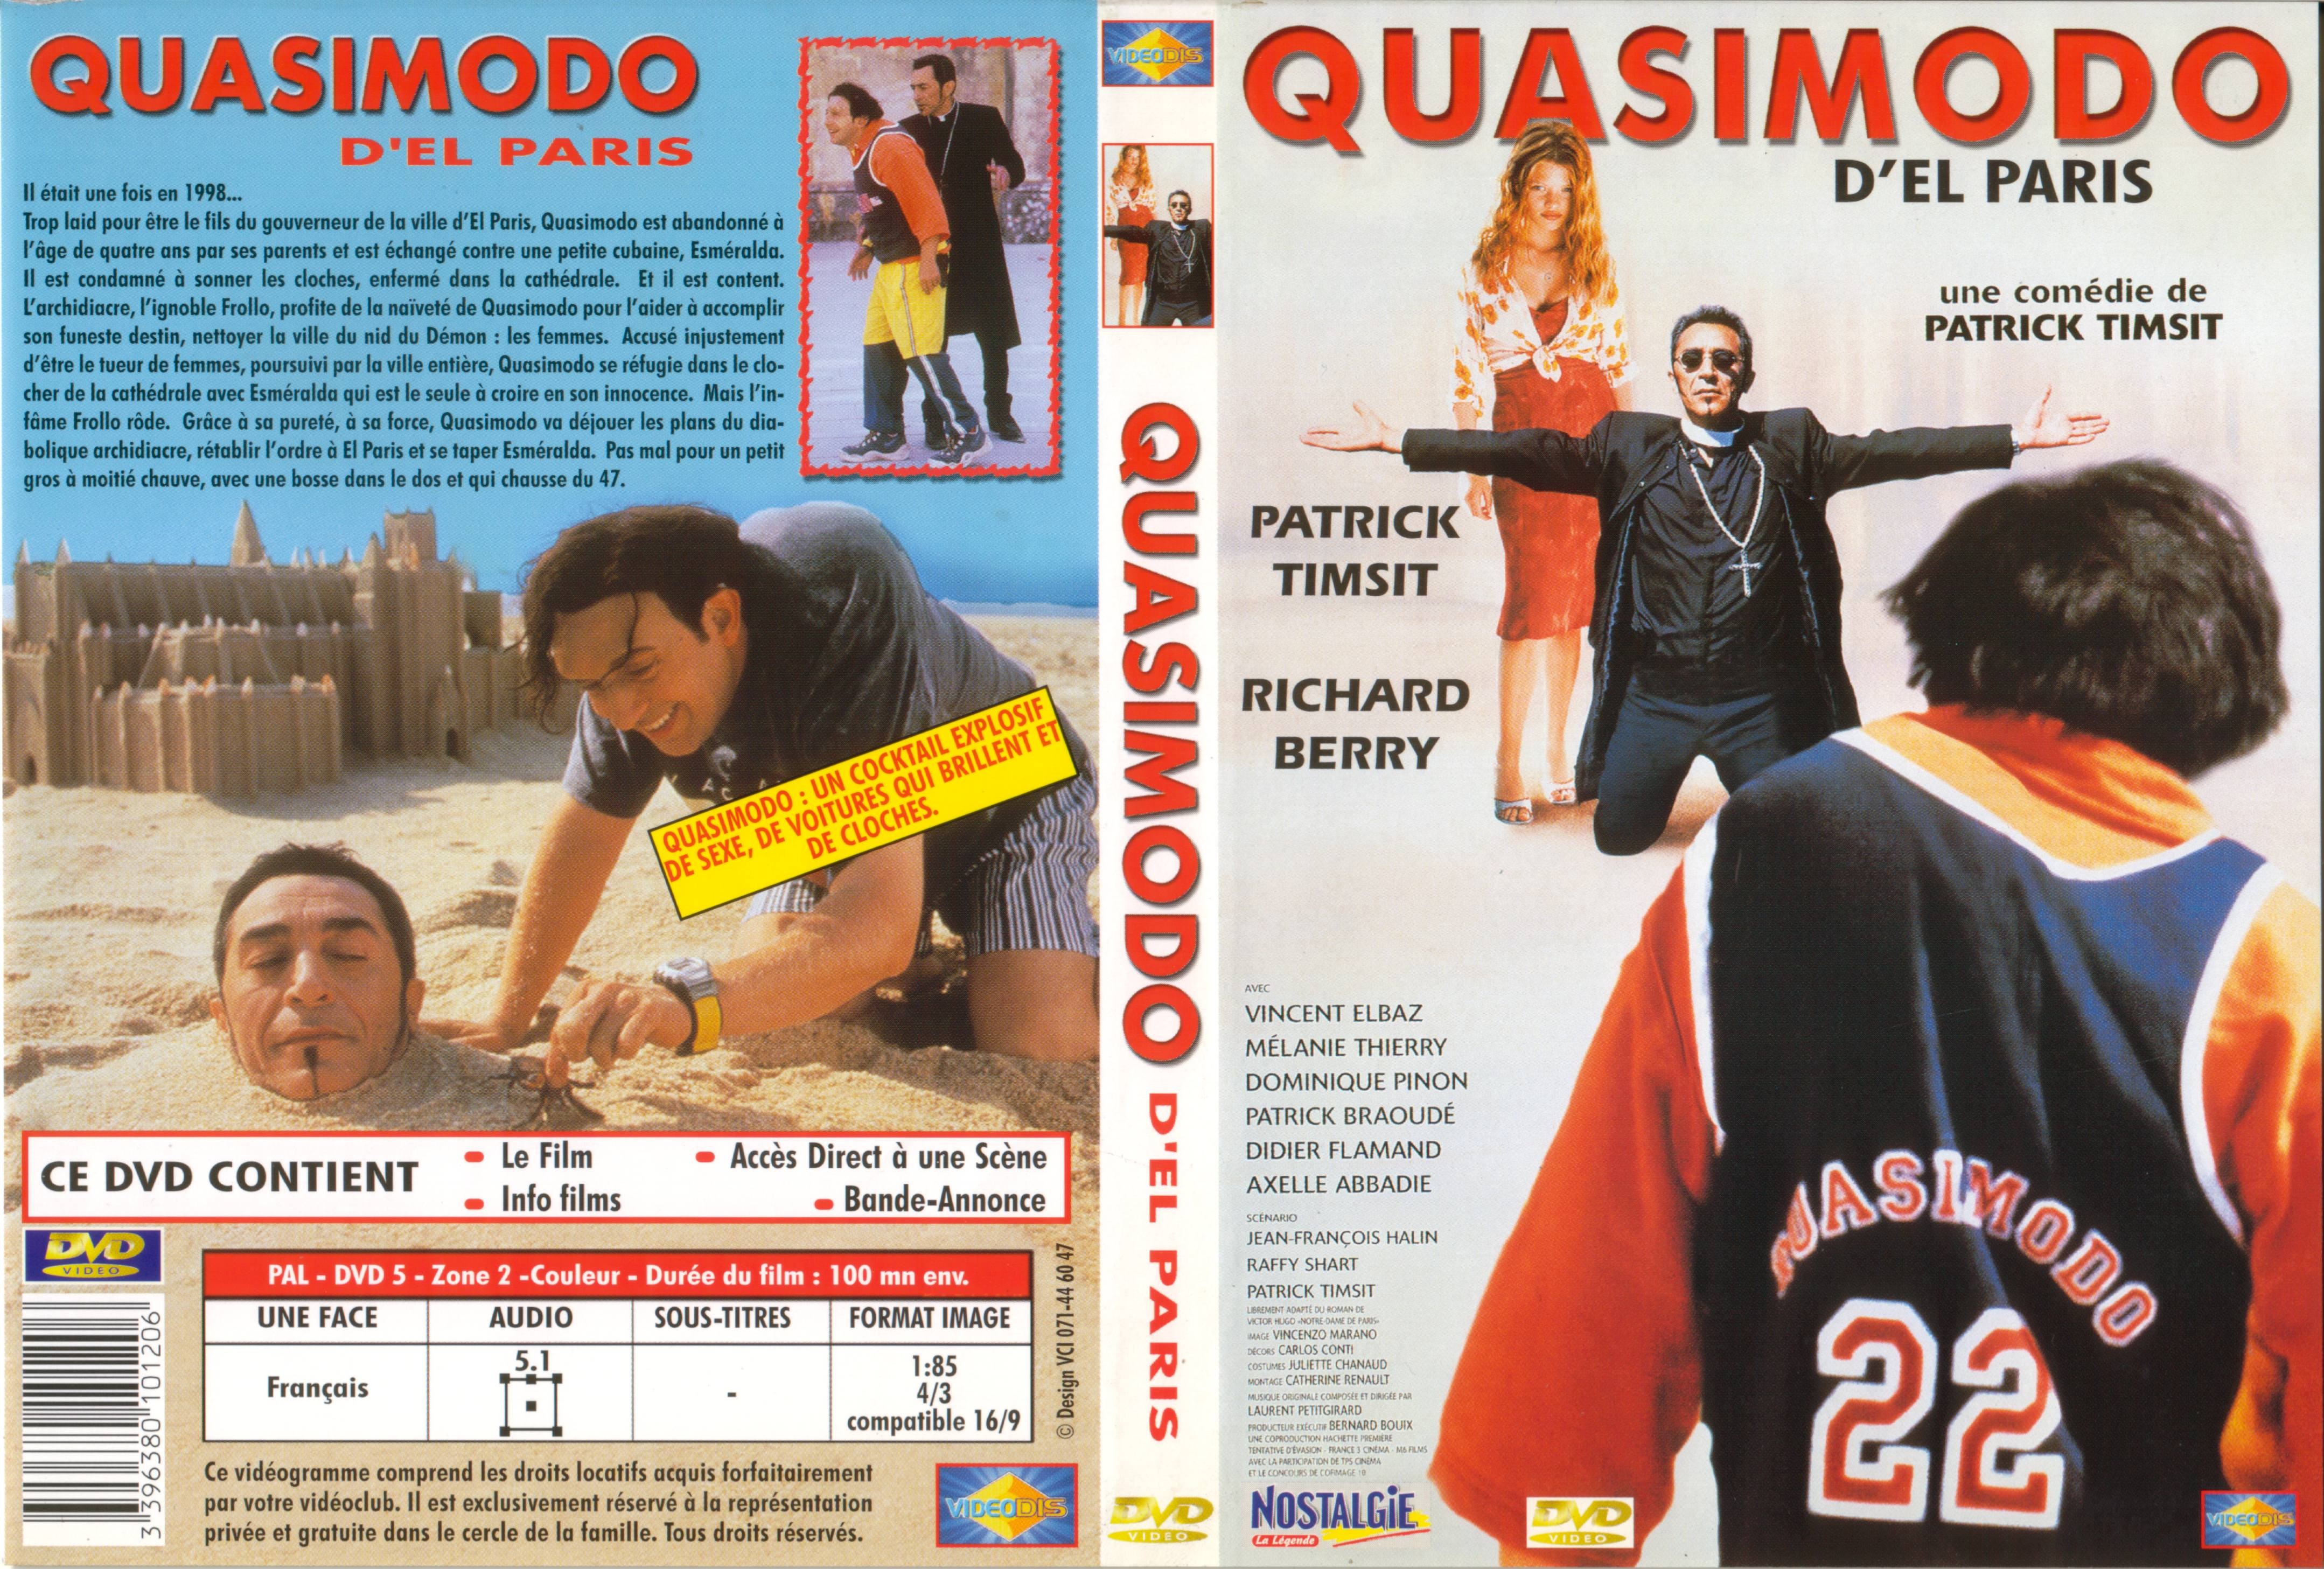 Jaquette DVD Quasimodo d